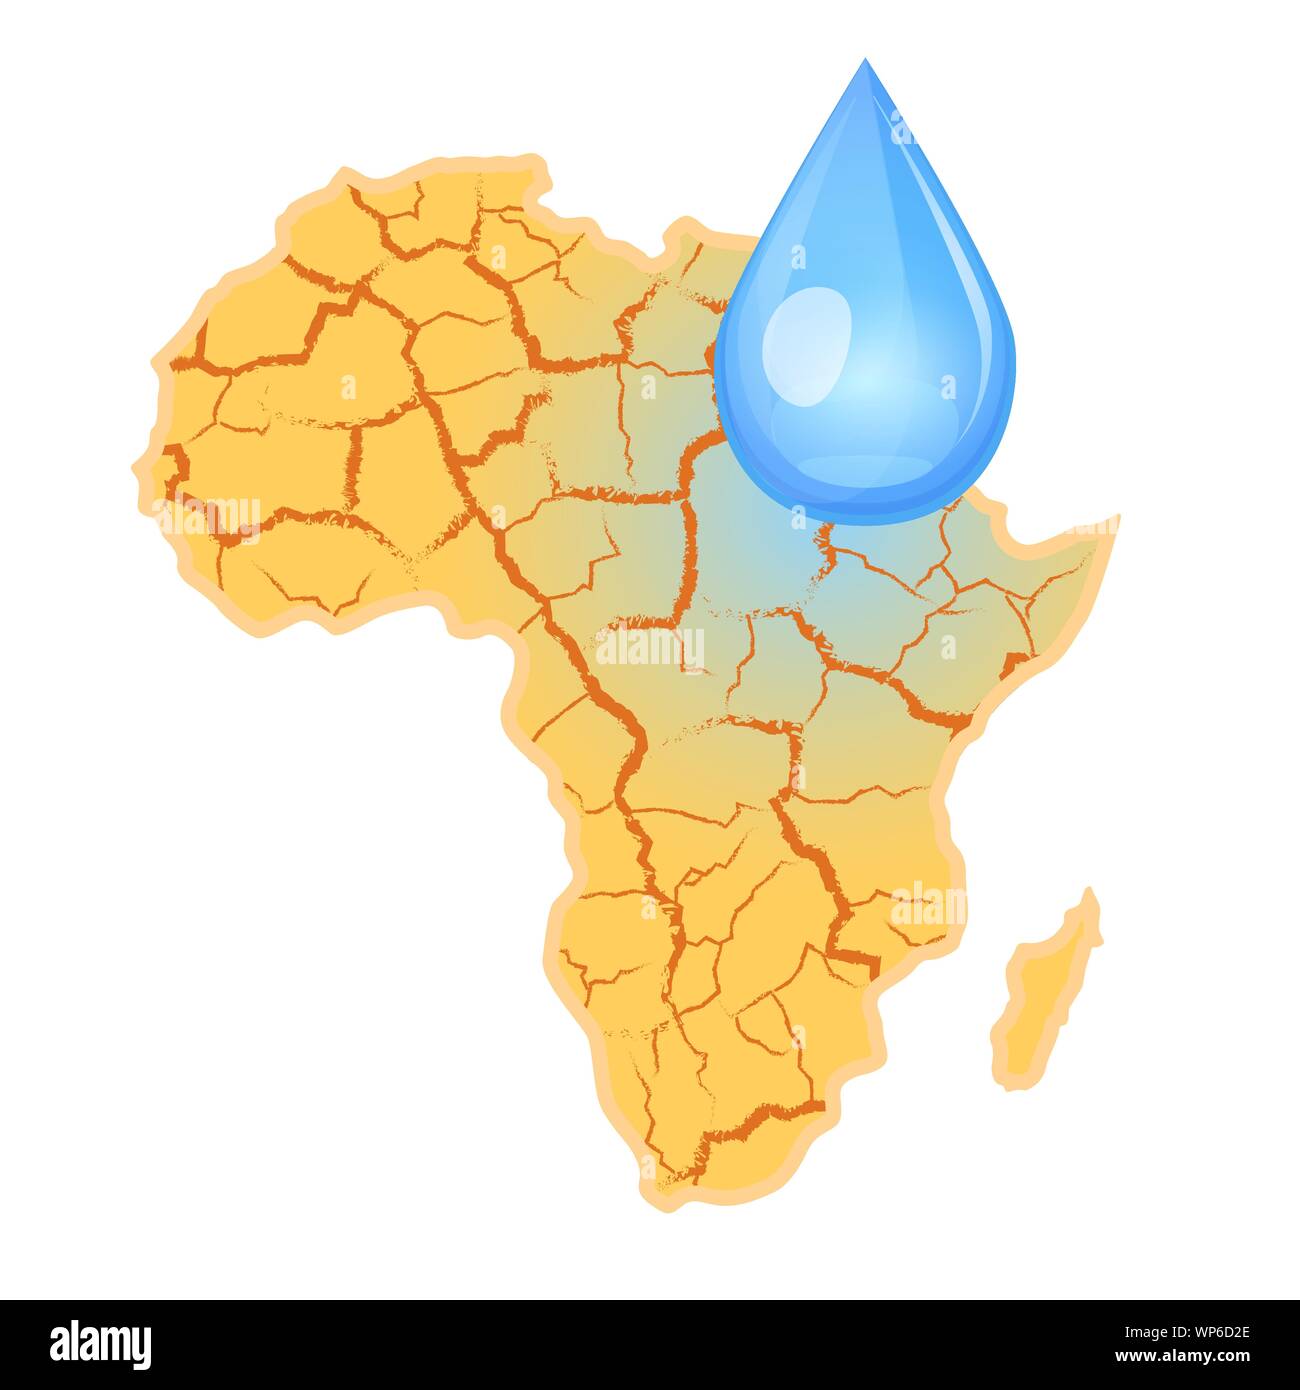 Afrika braucht Wasser. Wasserknappheit Konzept. Dürre in Afrika und ein Tropfen Wasser. Vector Illustration, auf weißem Hintergrund. Stock Vektor